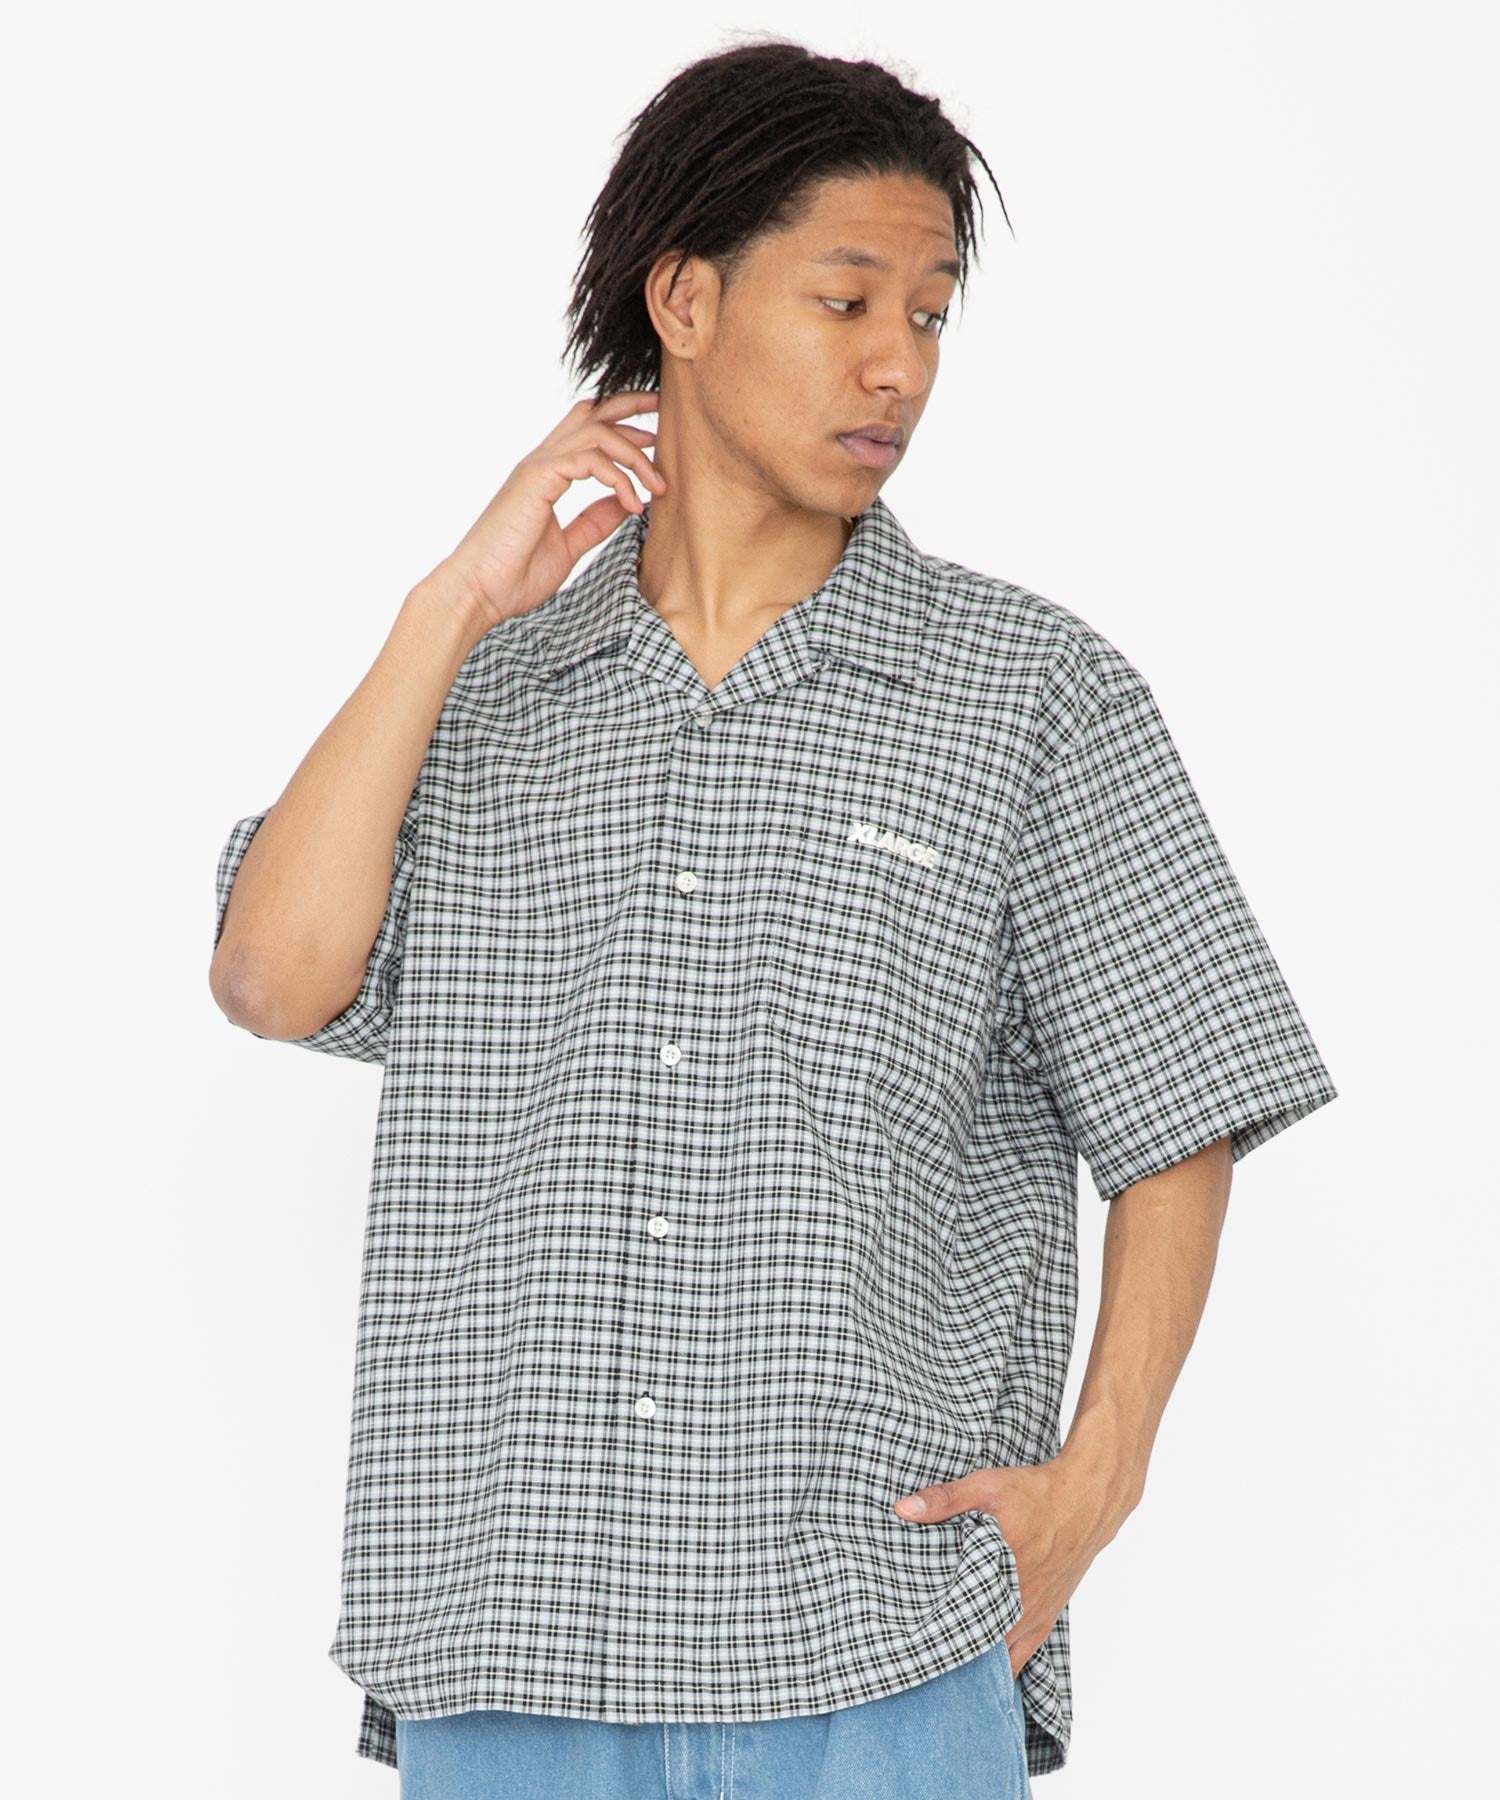 เสื้อเชิ้ต XLARGE รุ่น Embroidered Plaid S/S Shirt